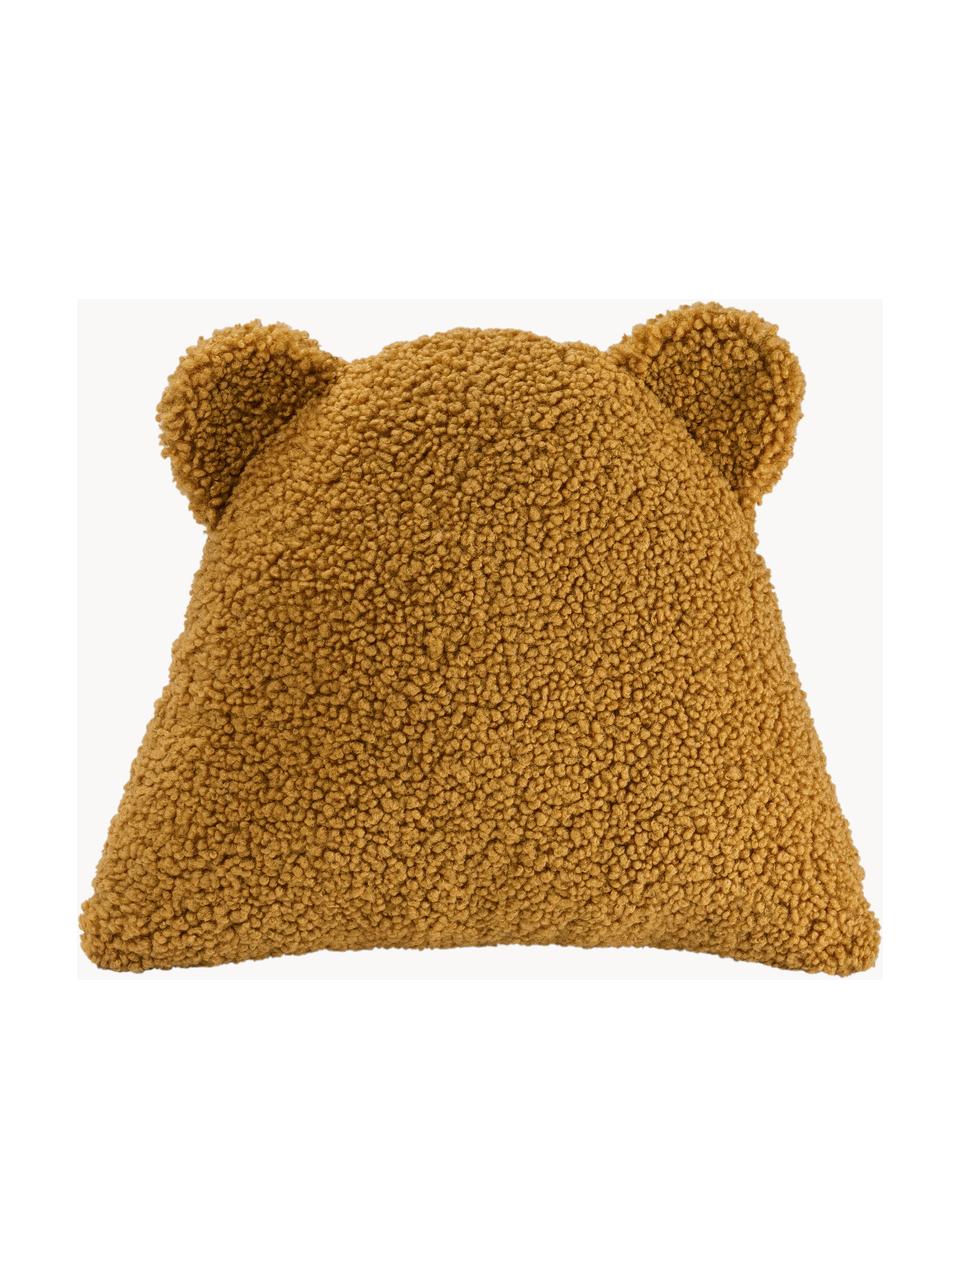 Poduszka do przytulania Teddy Bear, Tapicerka: Teddy (100% poliester), Musztardowy, S 40 x D 37 cm